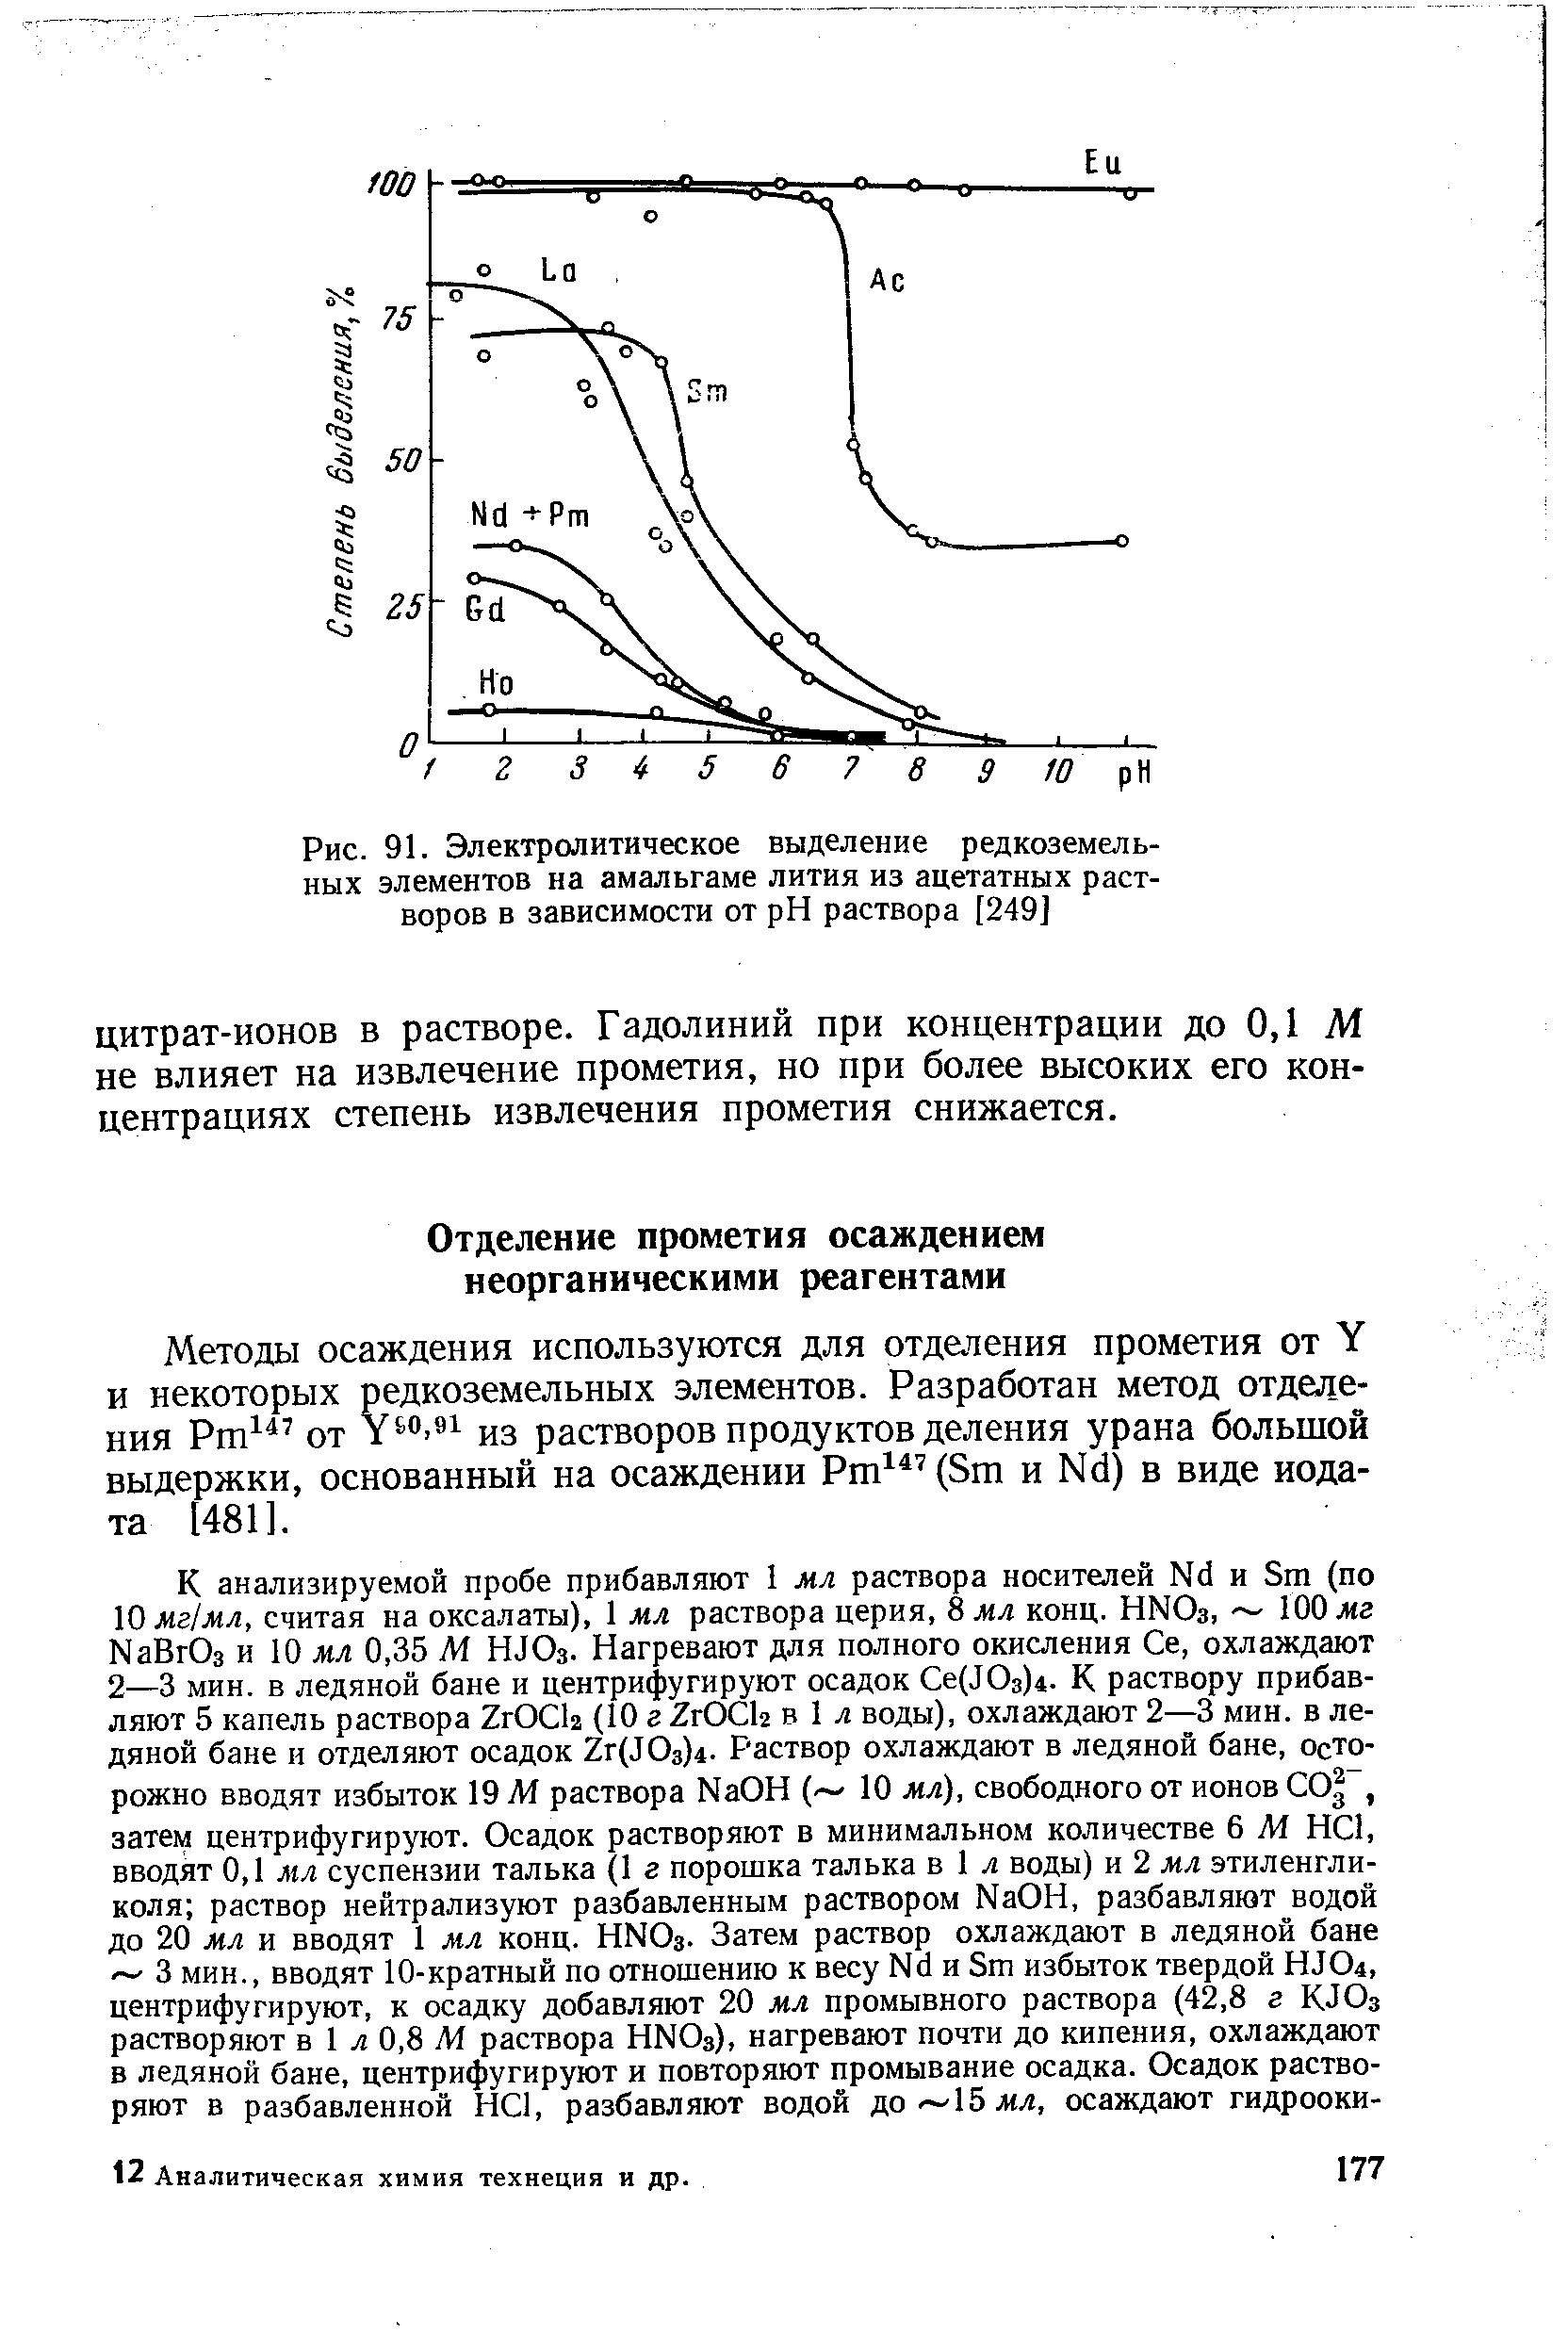 Методы осаждения используются для отделения прометия от Y и некоторых редкоземельных элементов. Разработан метод отделения Рт от У - из растворов продуктов деления урана большой выдержки, основанный на осаждении Рт (Sm и Nd) в виде иодата [481].